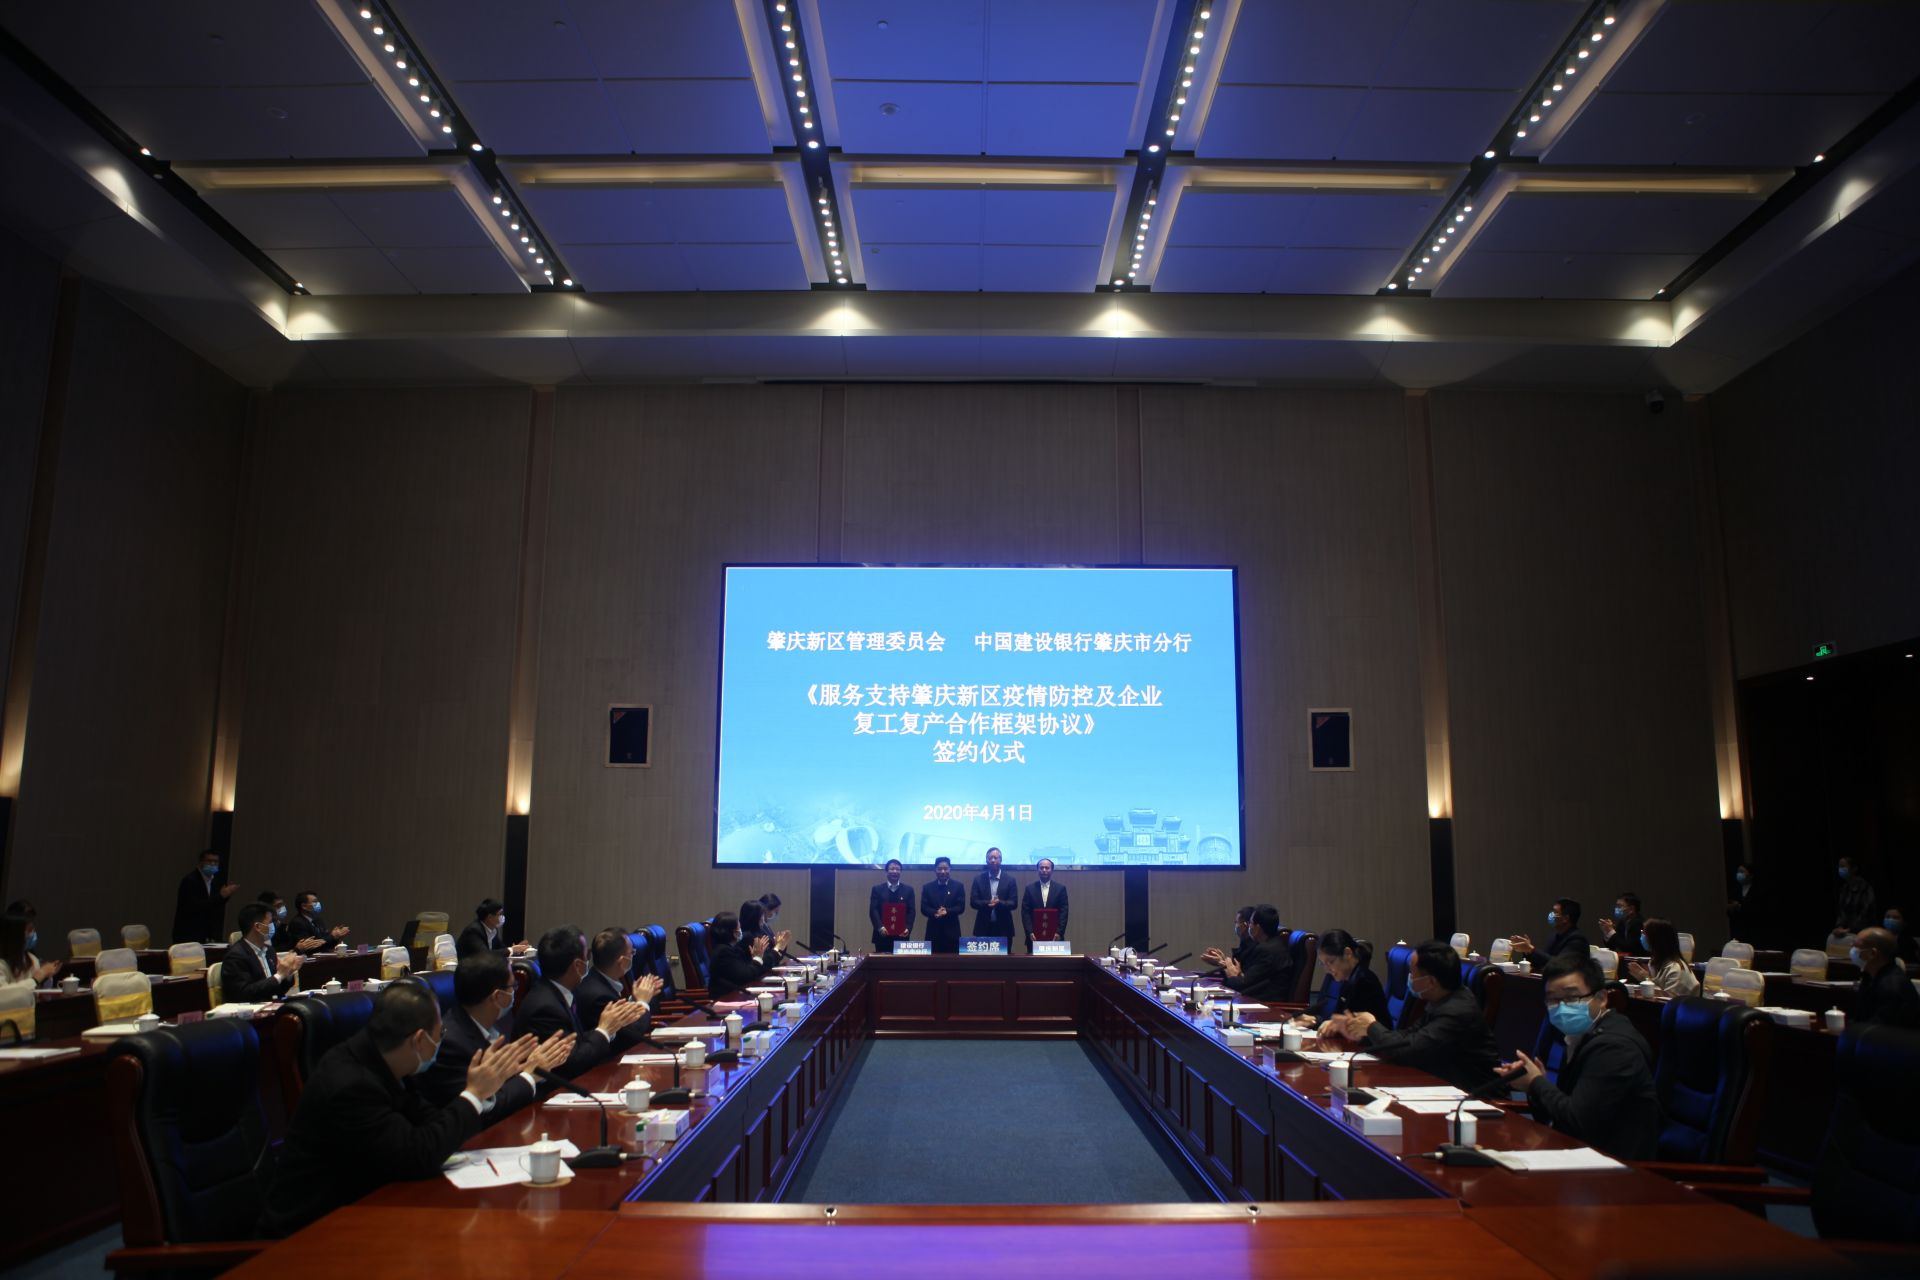 建行肇庆市分行与肇庆新区管理委员会签订复工复产协议。 肇庆建行供图